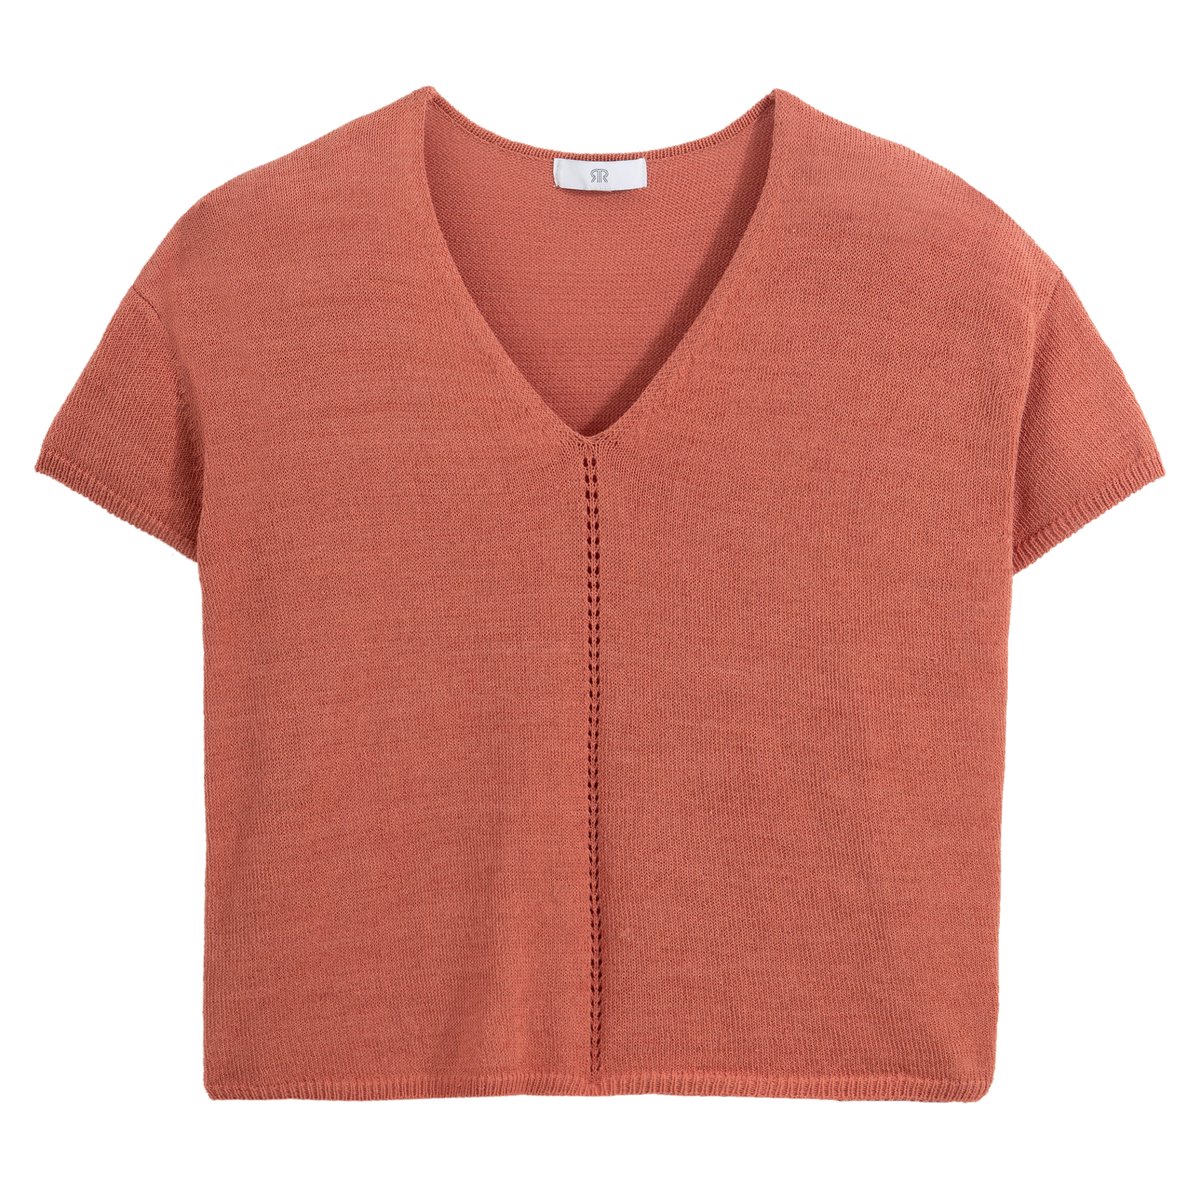 Пуловер La Redoute С V-образным вырезом из тонкого трикотажа XL розовый, размер XL - фото 5